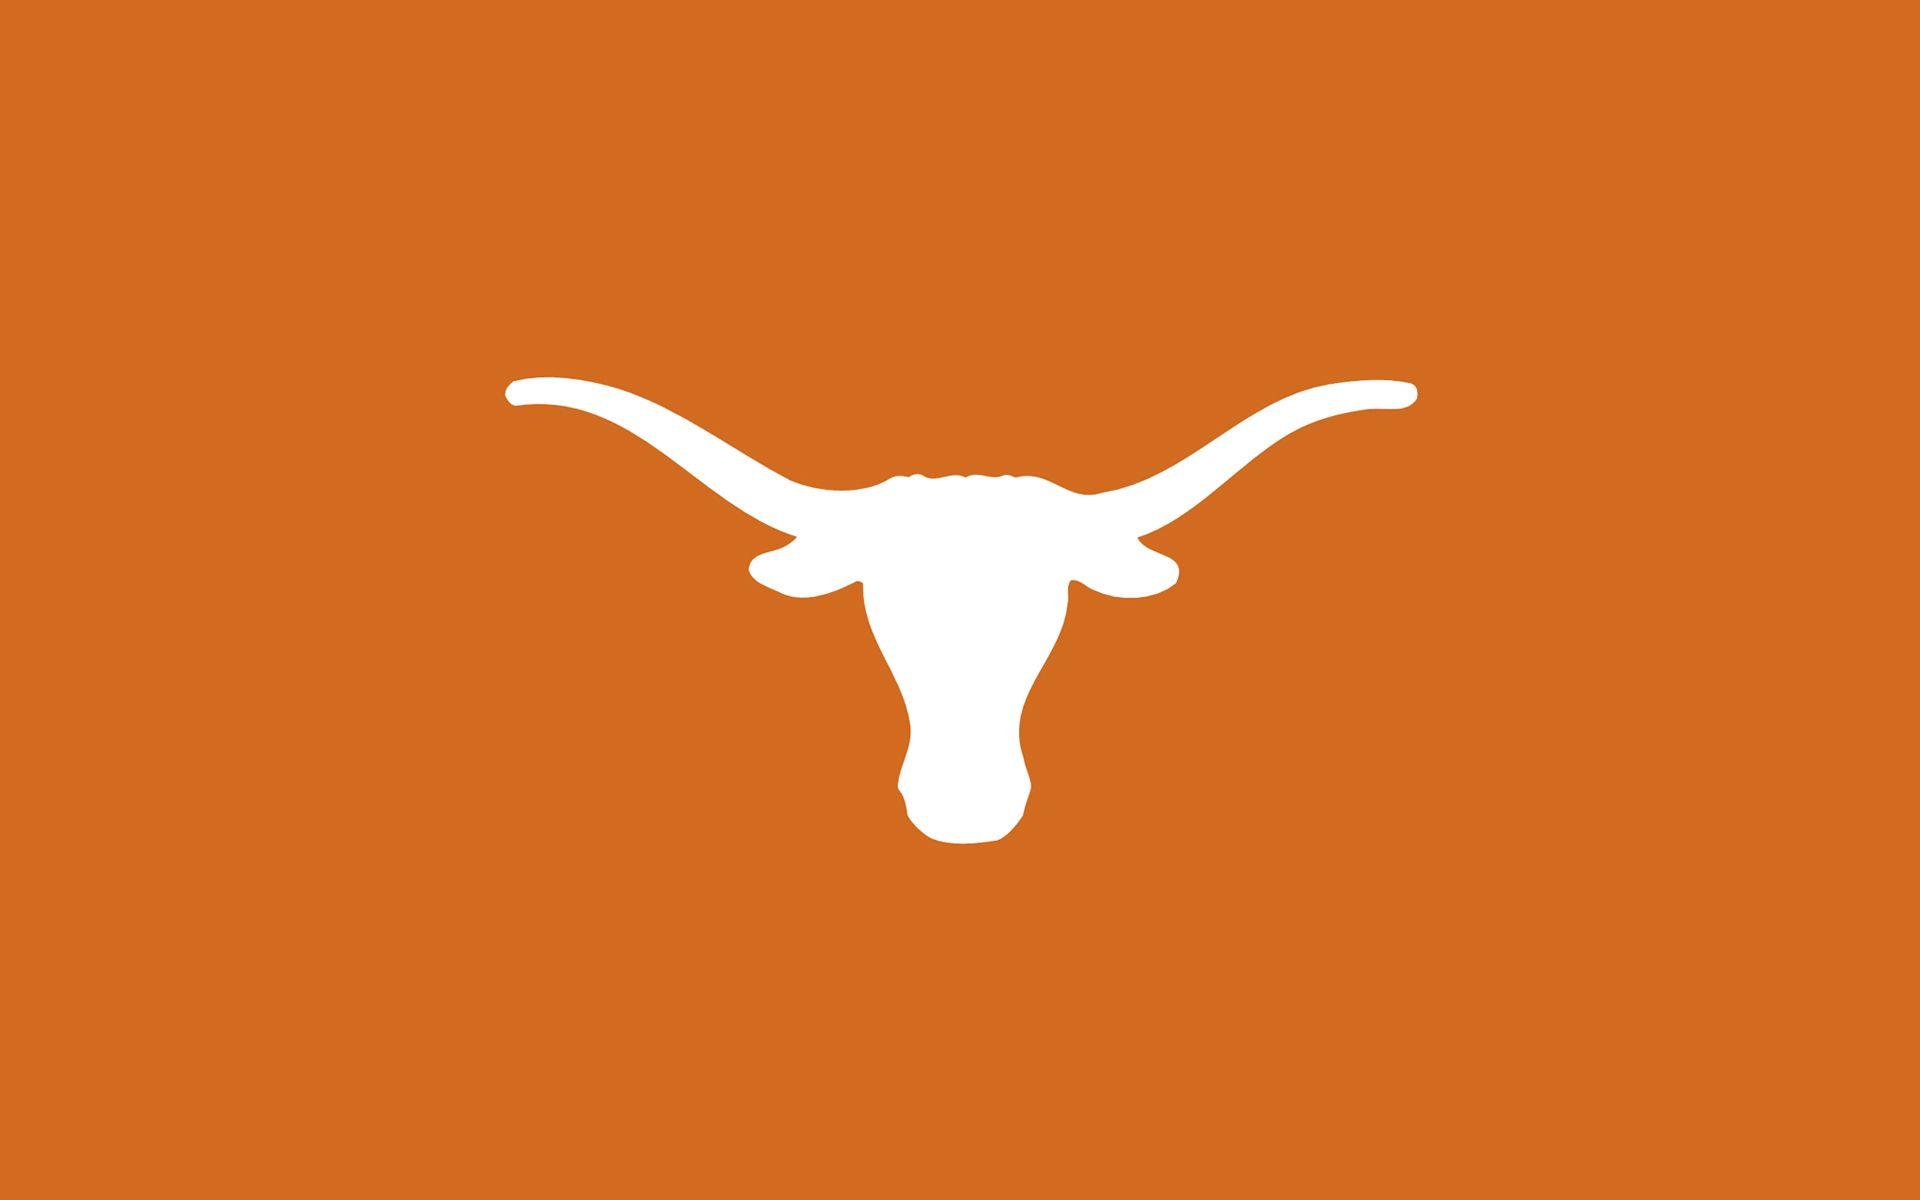 Longhorn Logo - The UT Austin Longhorn logo. Texas My Texas!. Texas